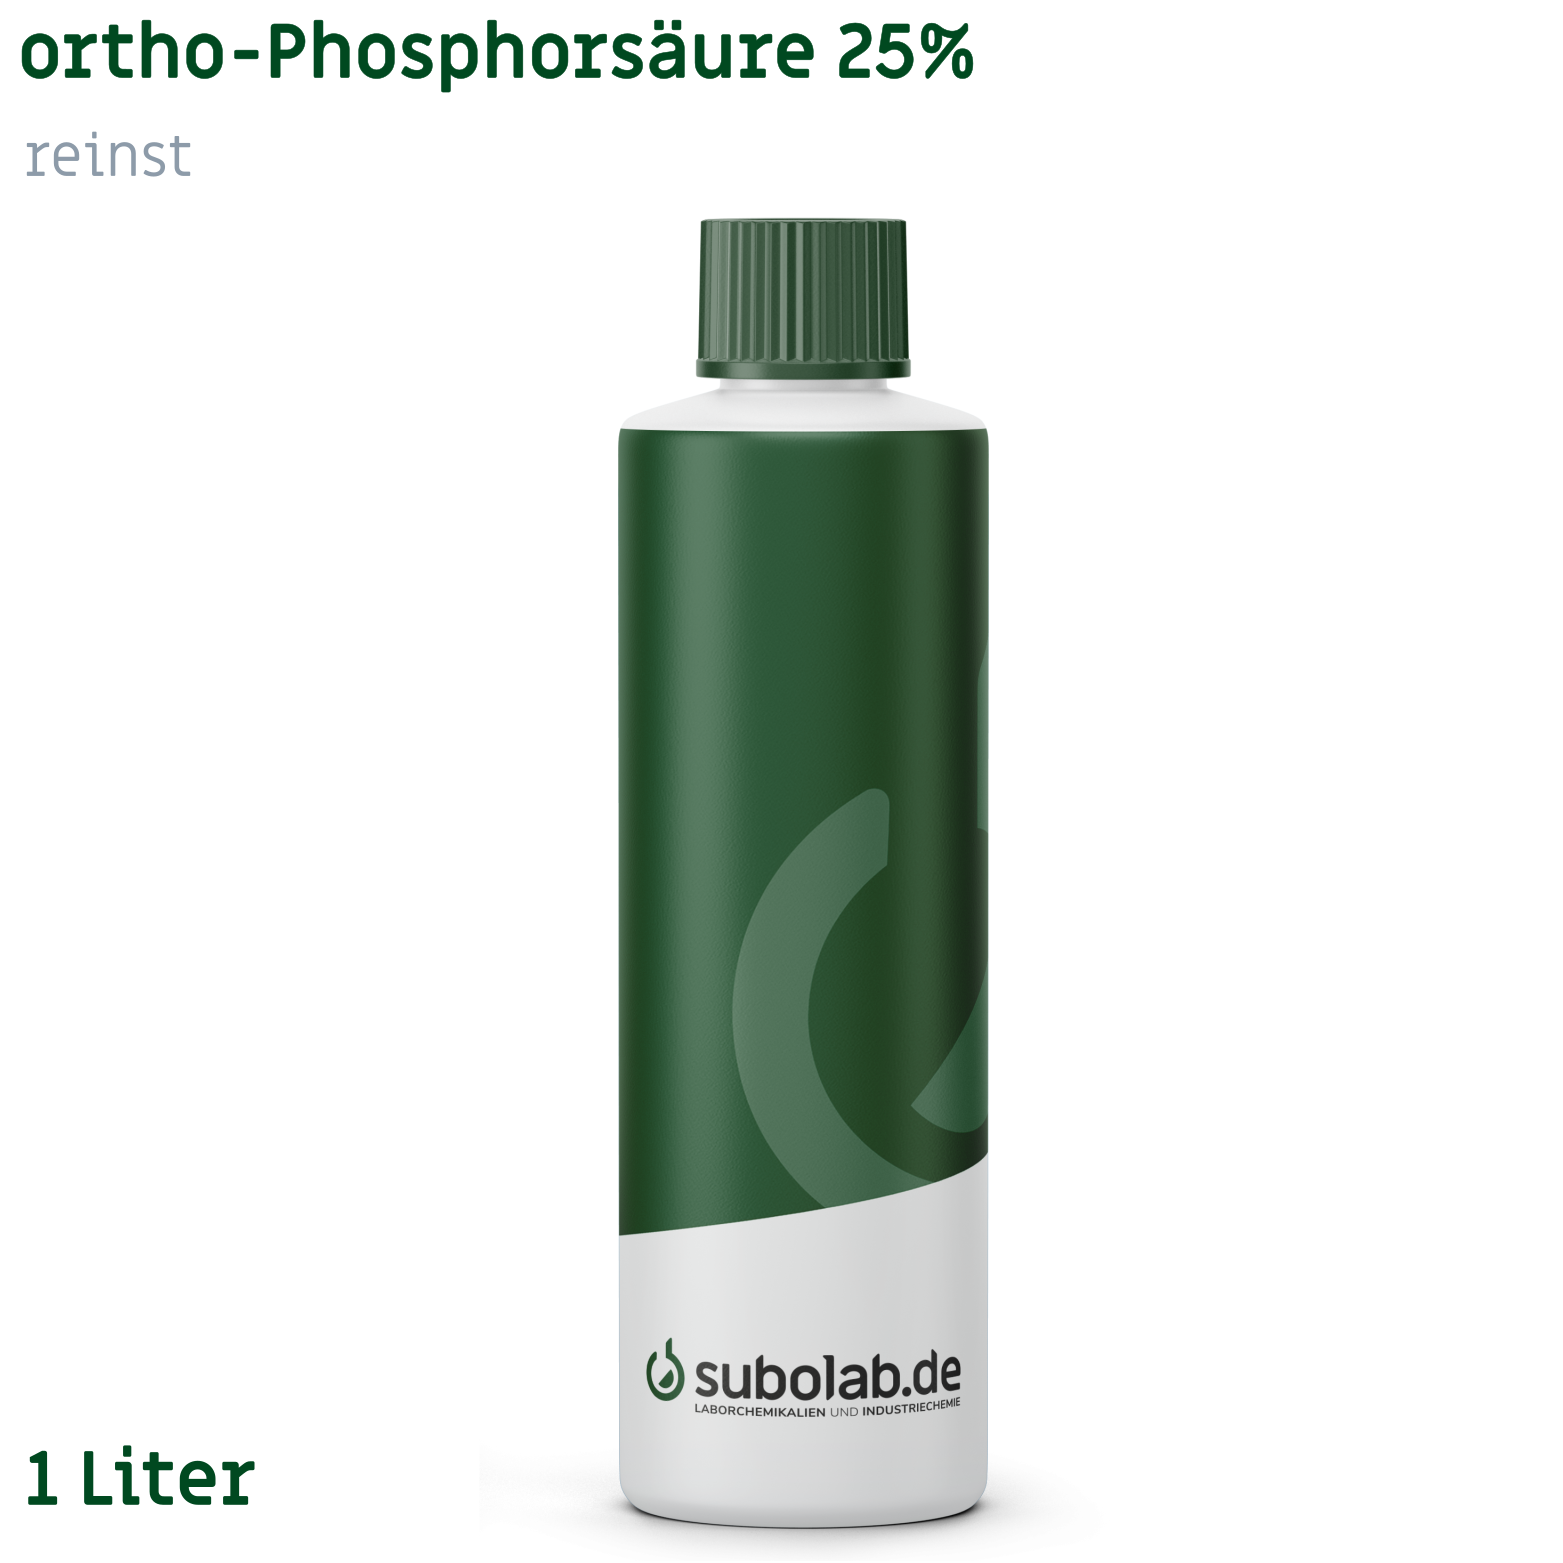 Bild von ortho-Phosphorsäure 25% reinst (1 Liter)